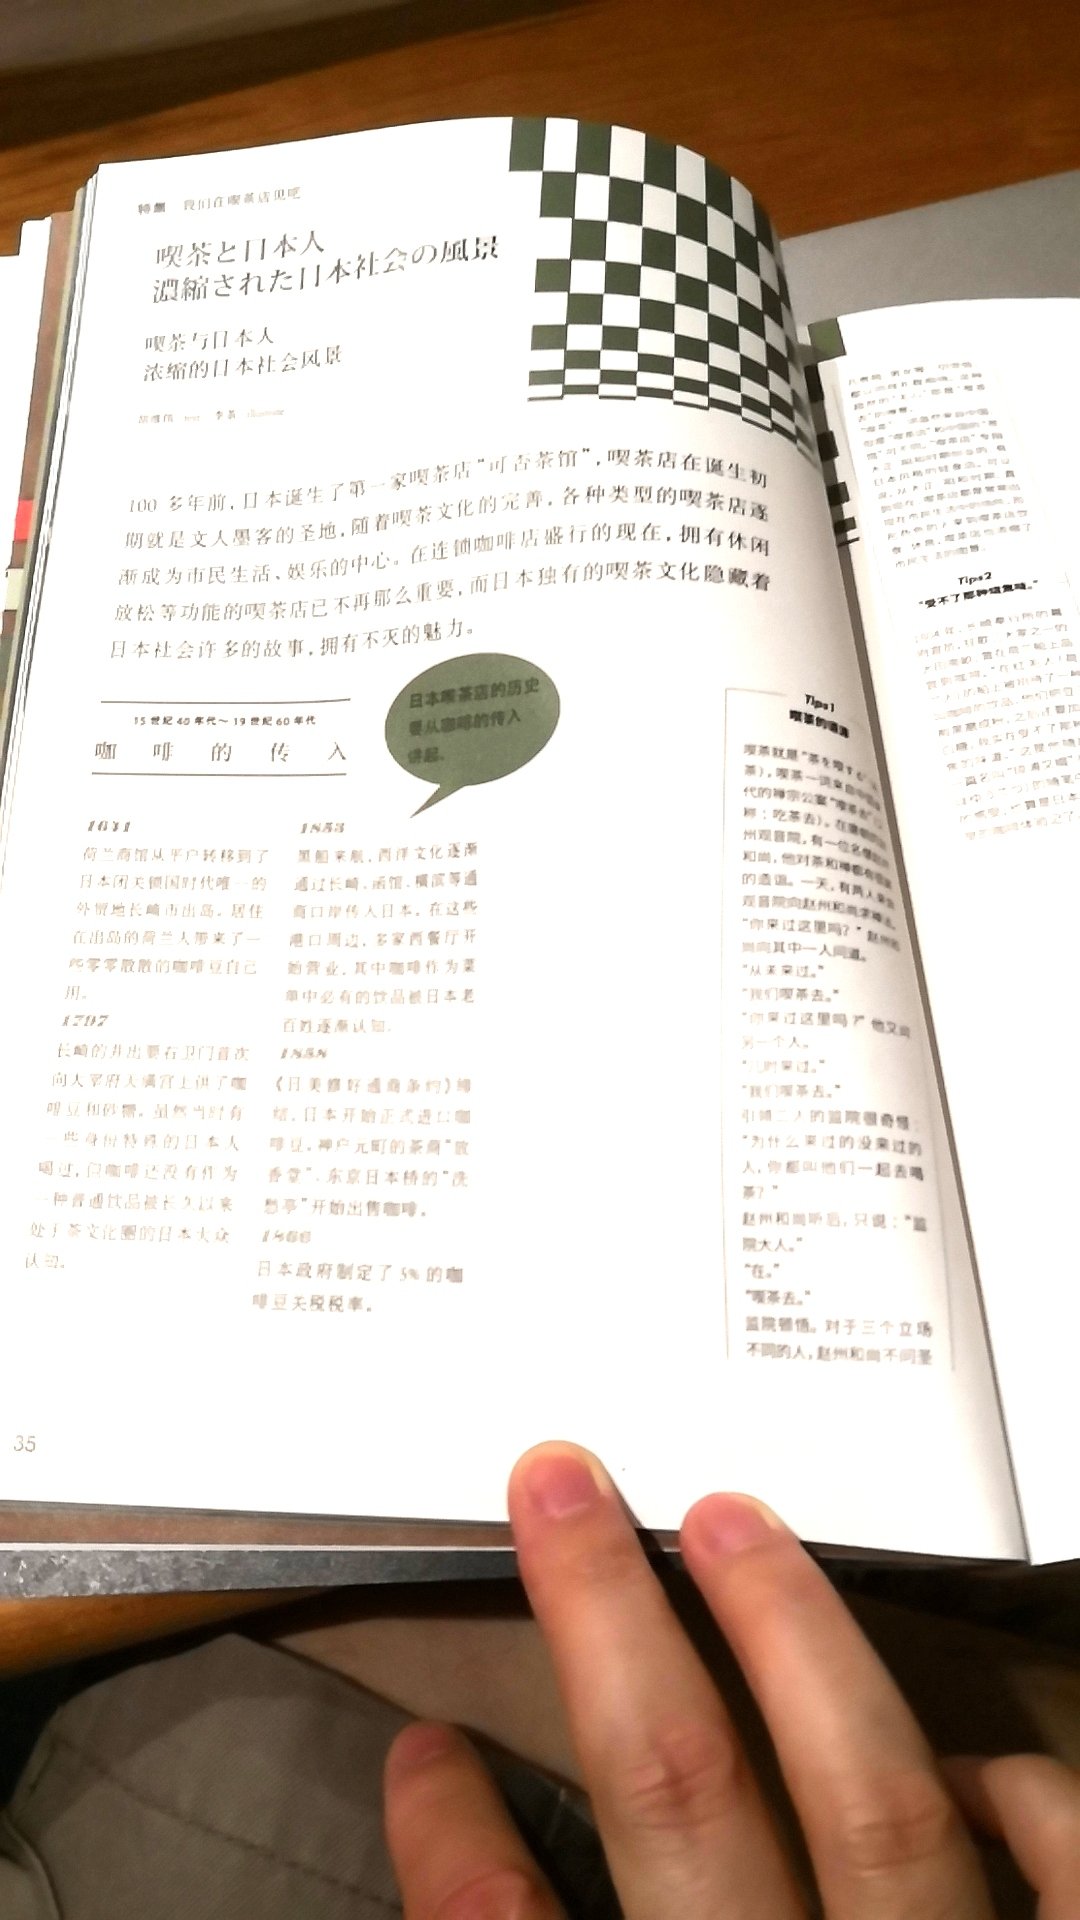 对日式咖啡店挺感兴趣的，正好这套丛书有做活动，值得一买。